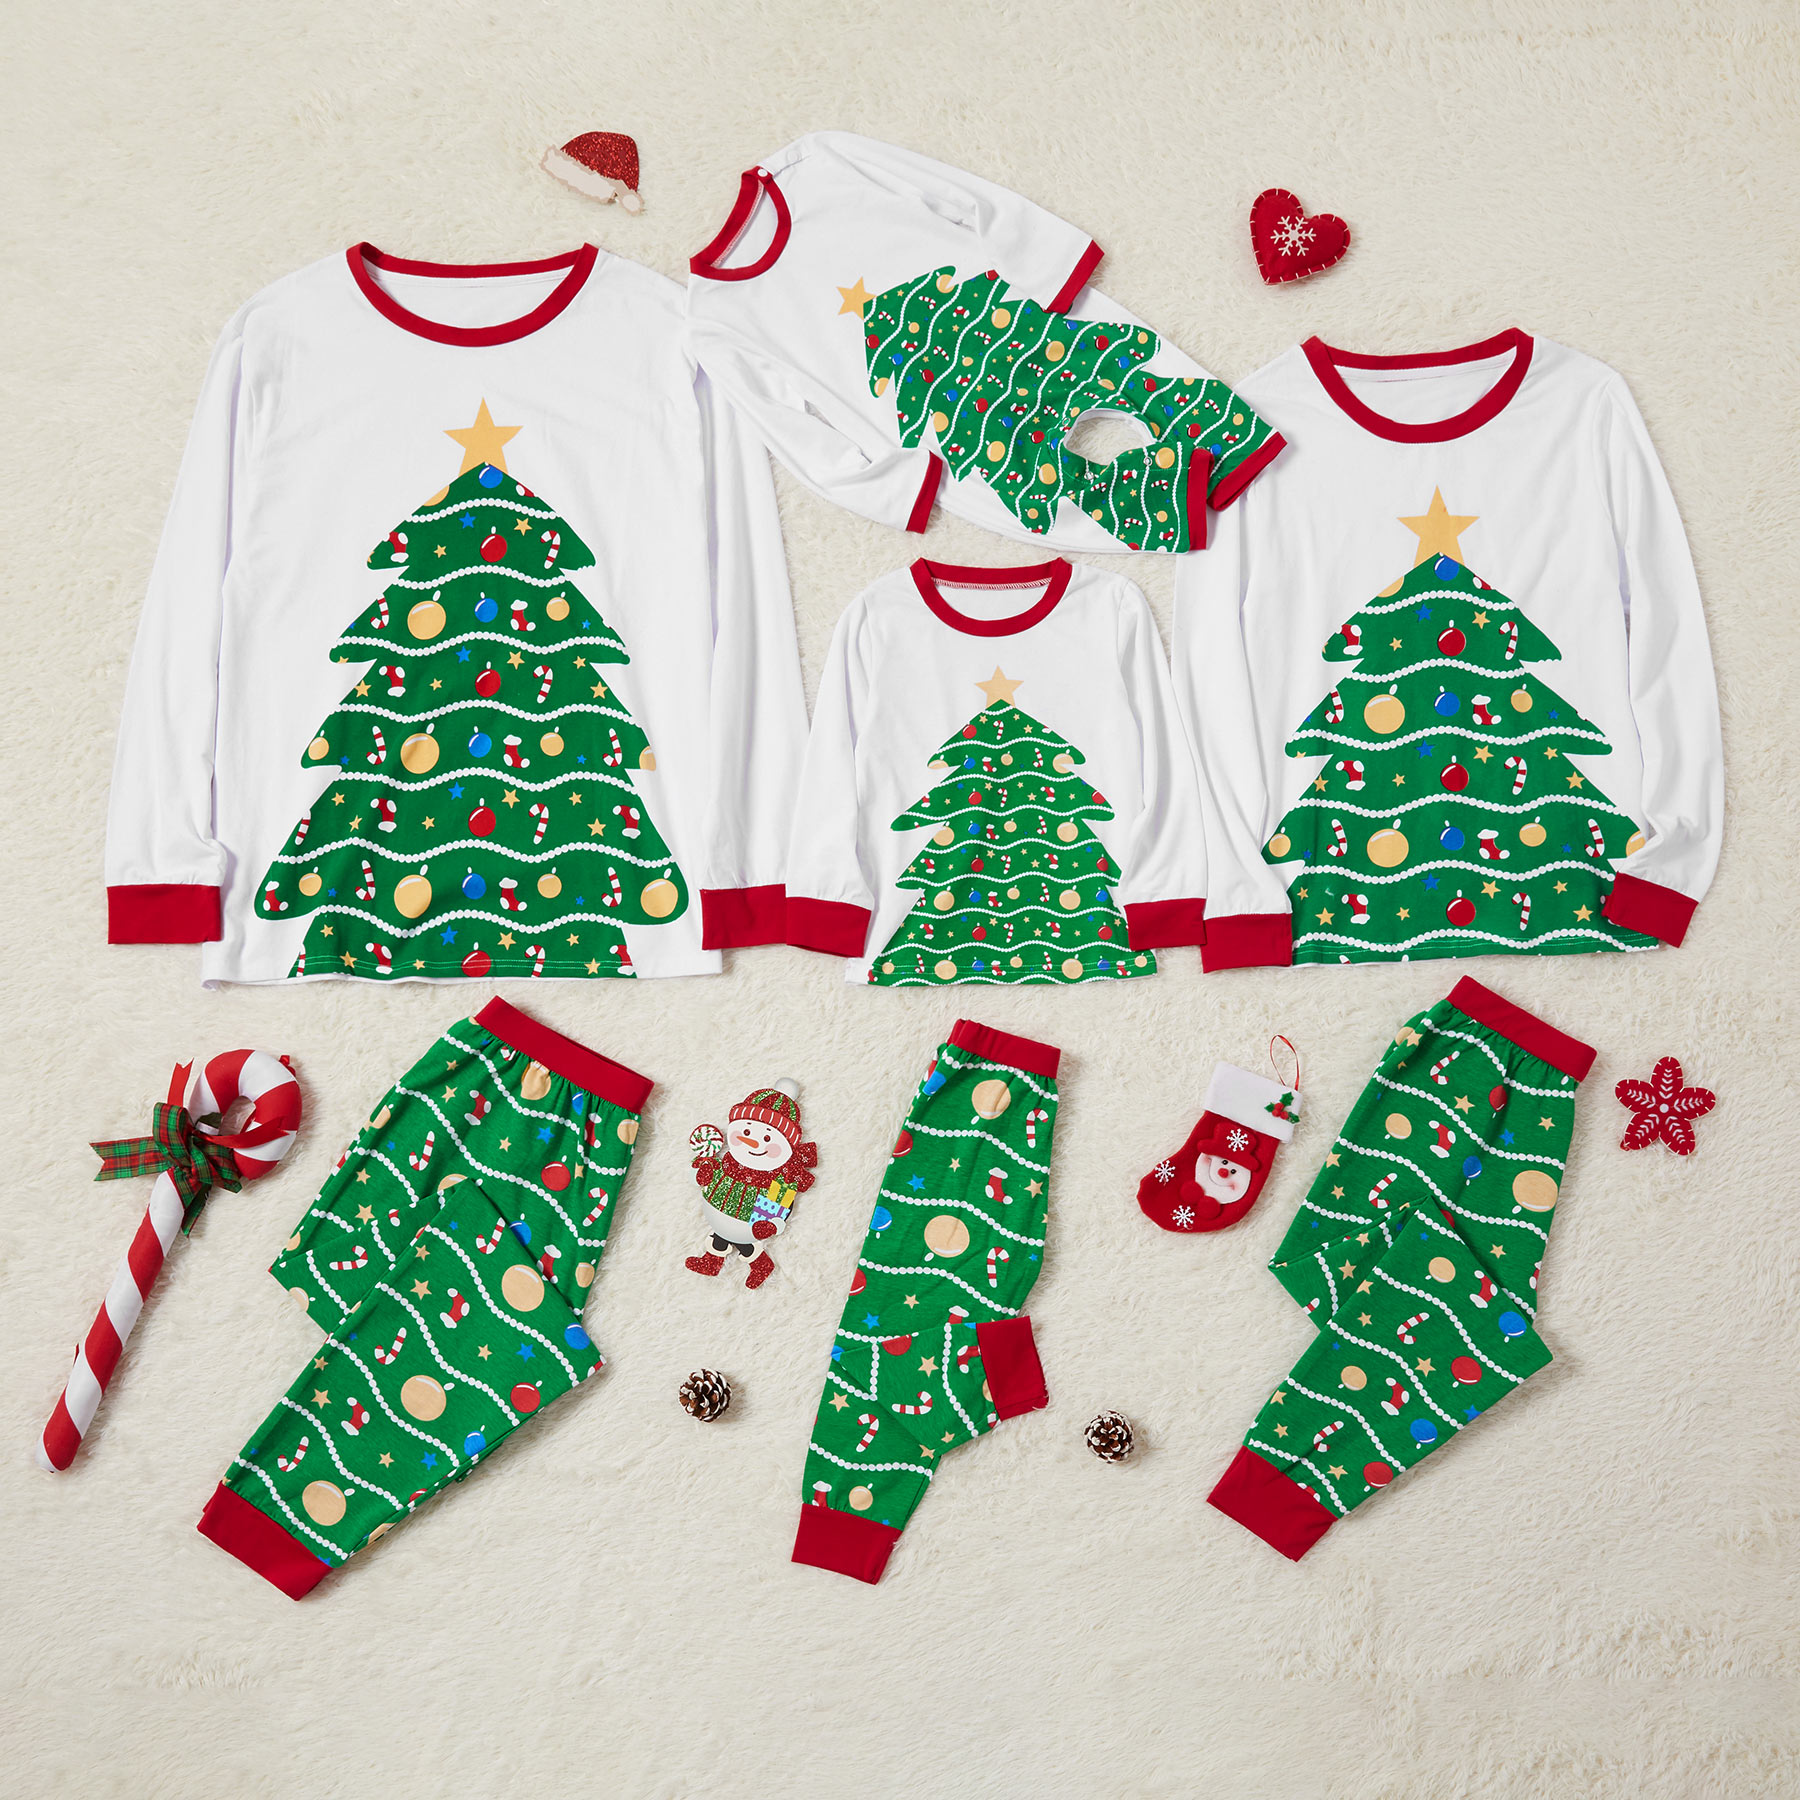 Happy Christmas Tree Print Family Matching Pajamas Set